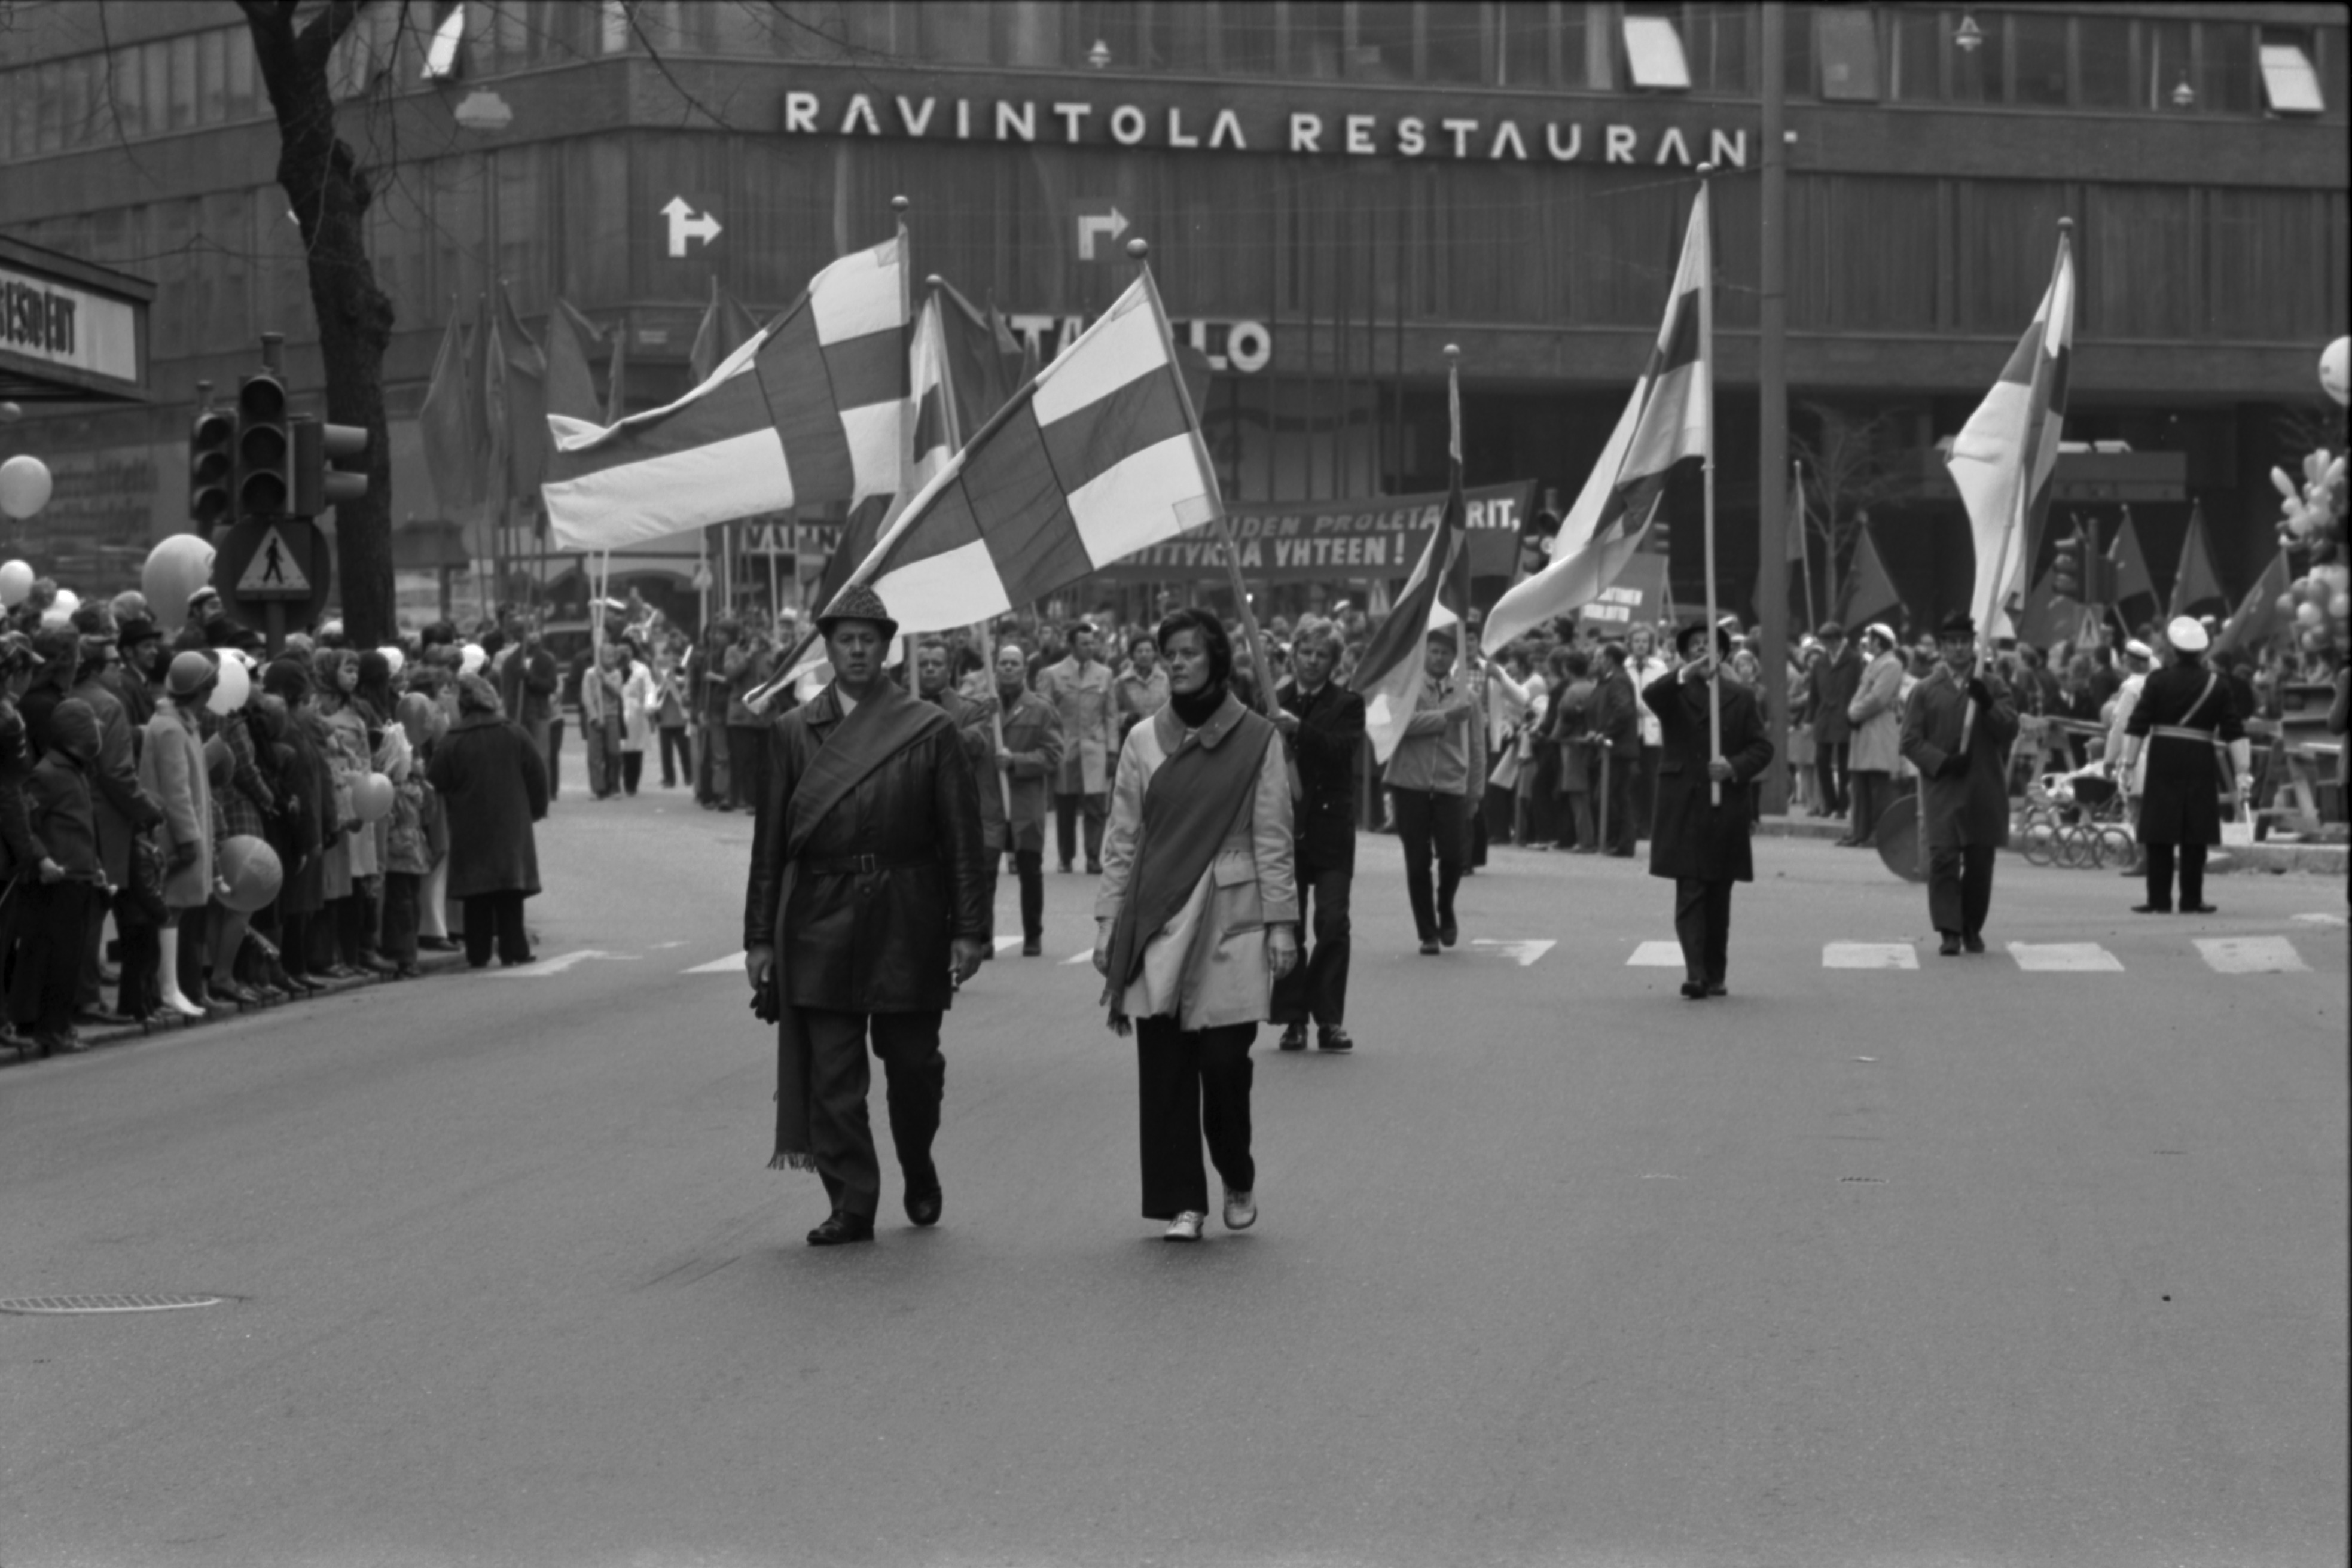 Pohjoisesplanadi. Työväen vappumarssikulkue kärjessään Suomen lippuja kääntymässä Mannerheimintieltä Pohjoisesplanadille 1.5.1972. Taustalla Mannerheimintie 10, hotelli Marskin talo.